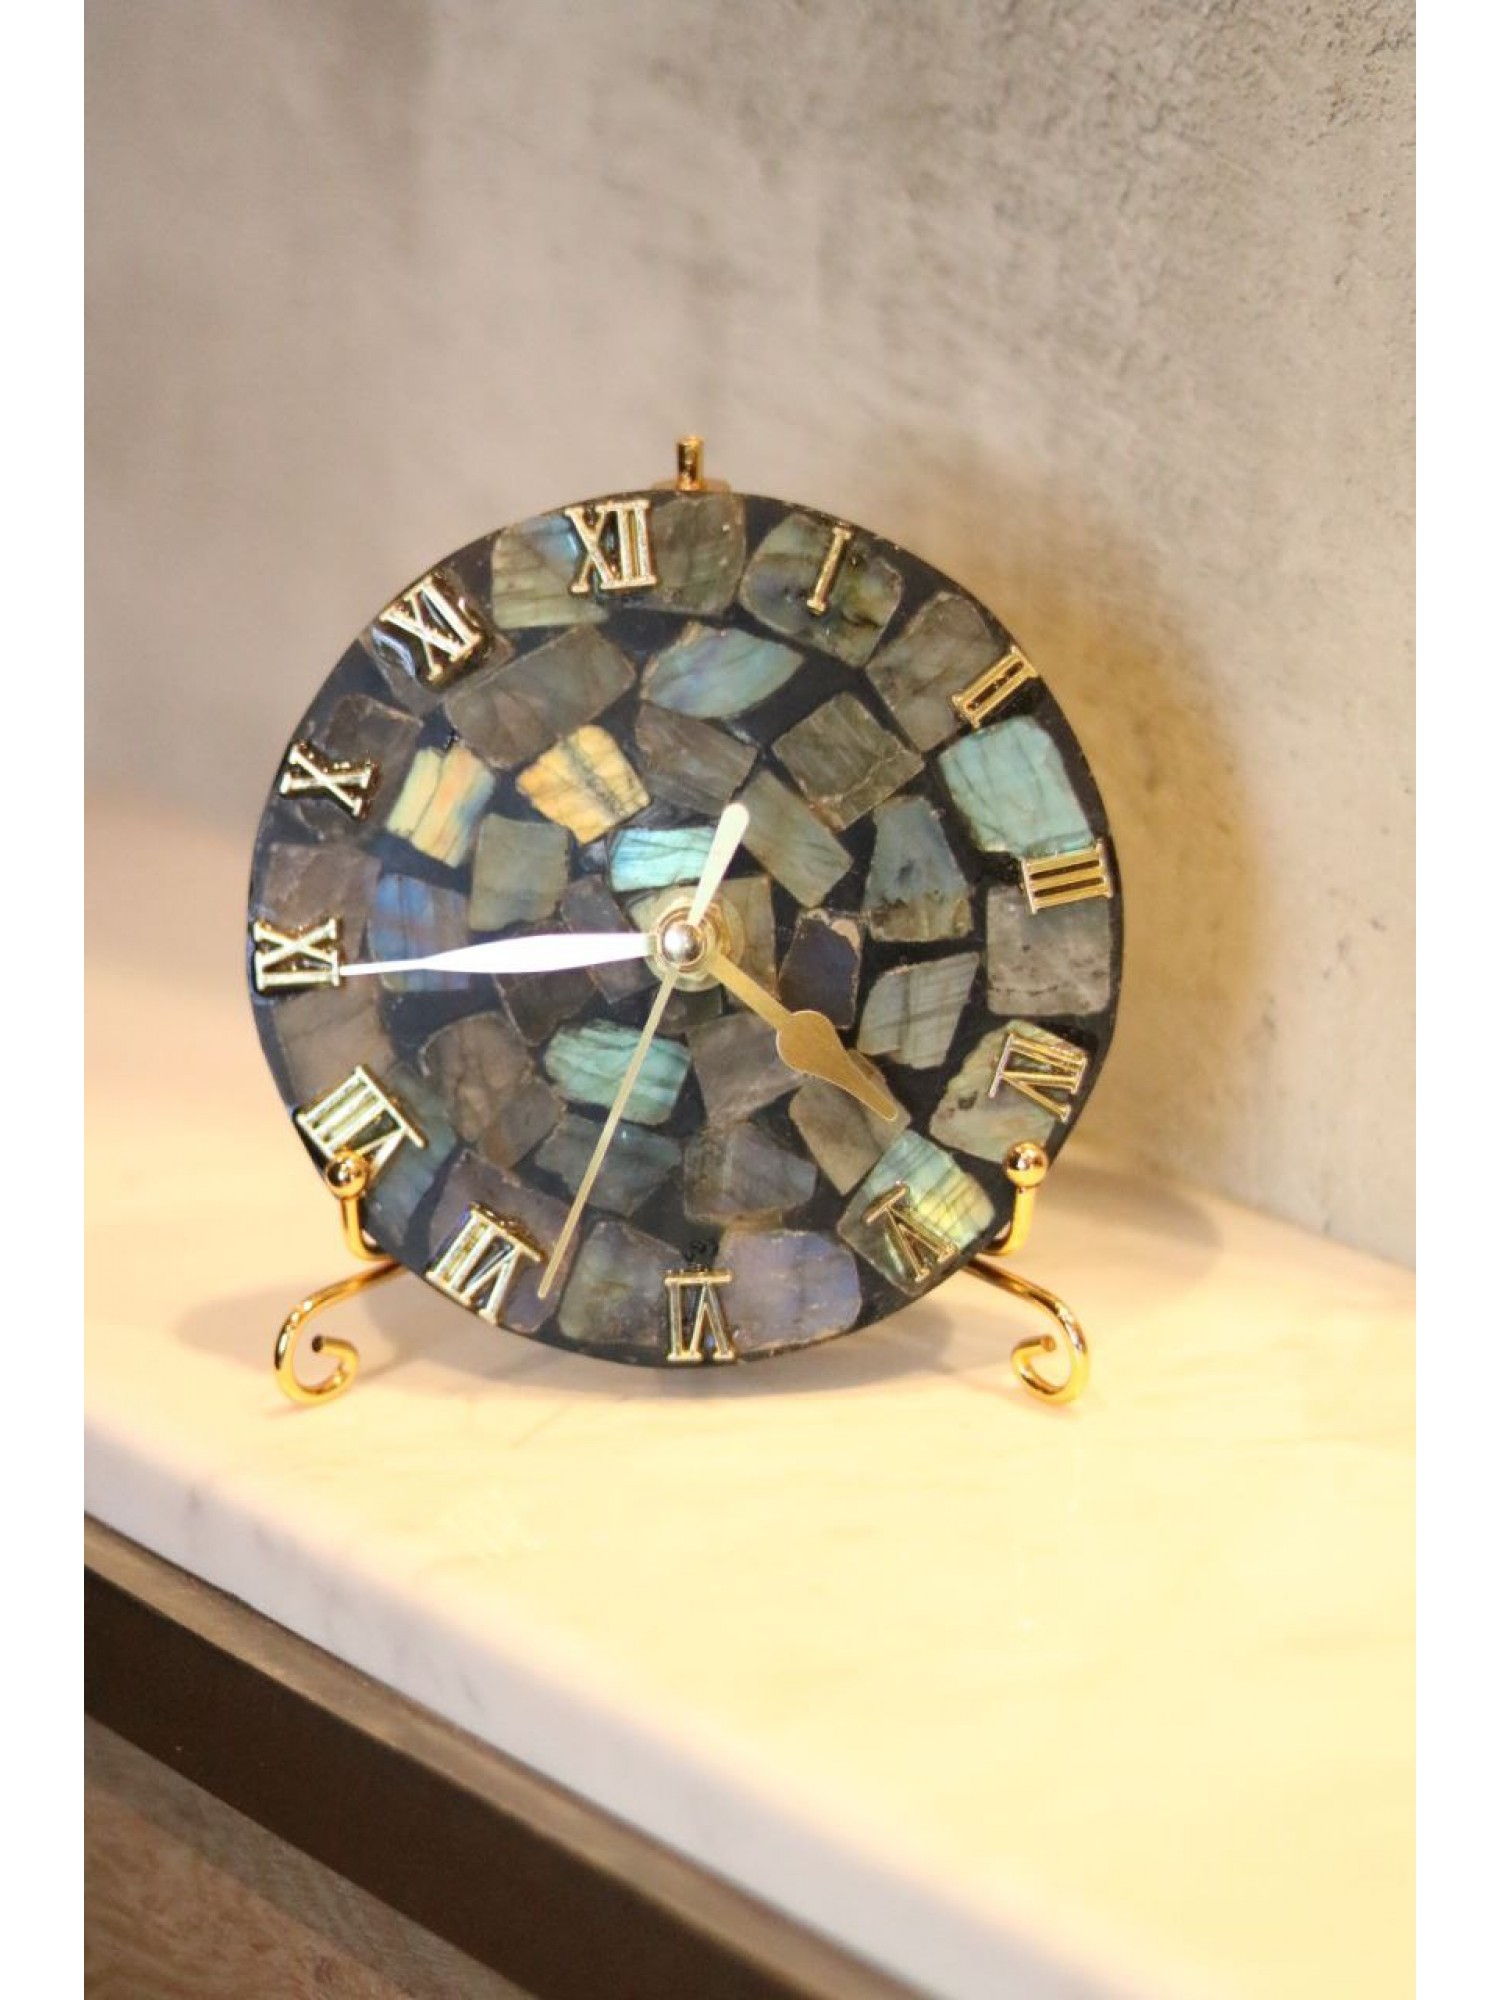 Статуэтка Часы "Мозаика" из эпоксидной смолы (перламутровая)